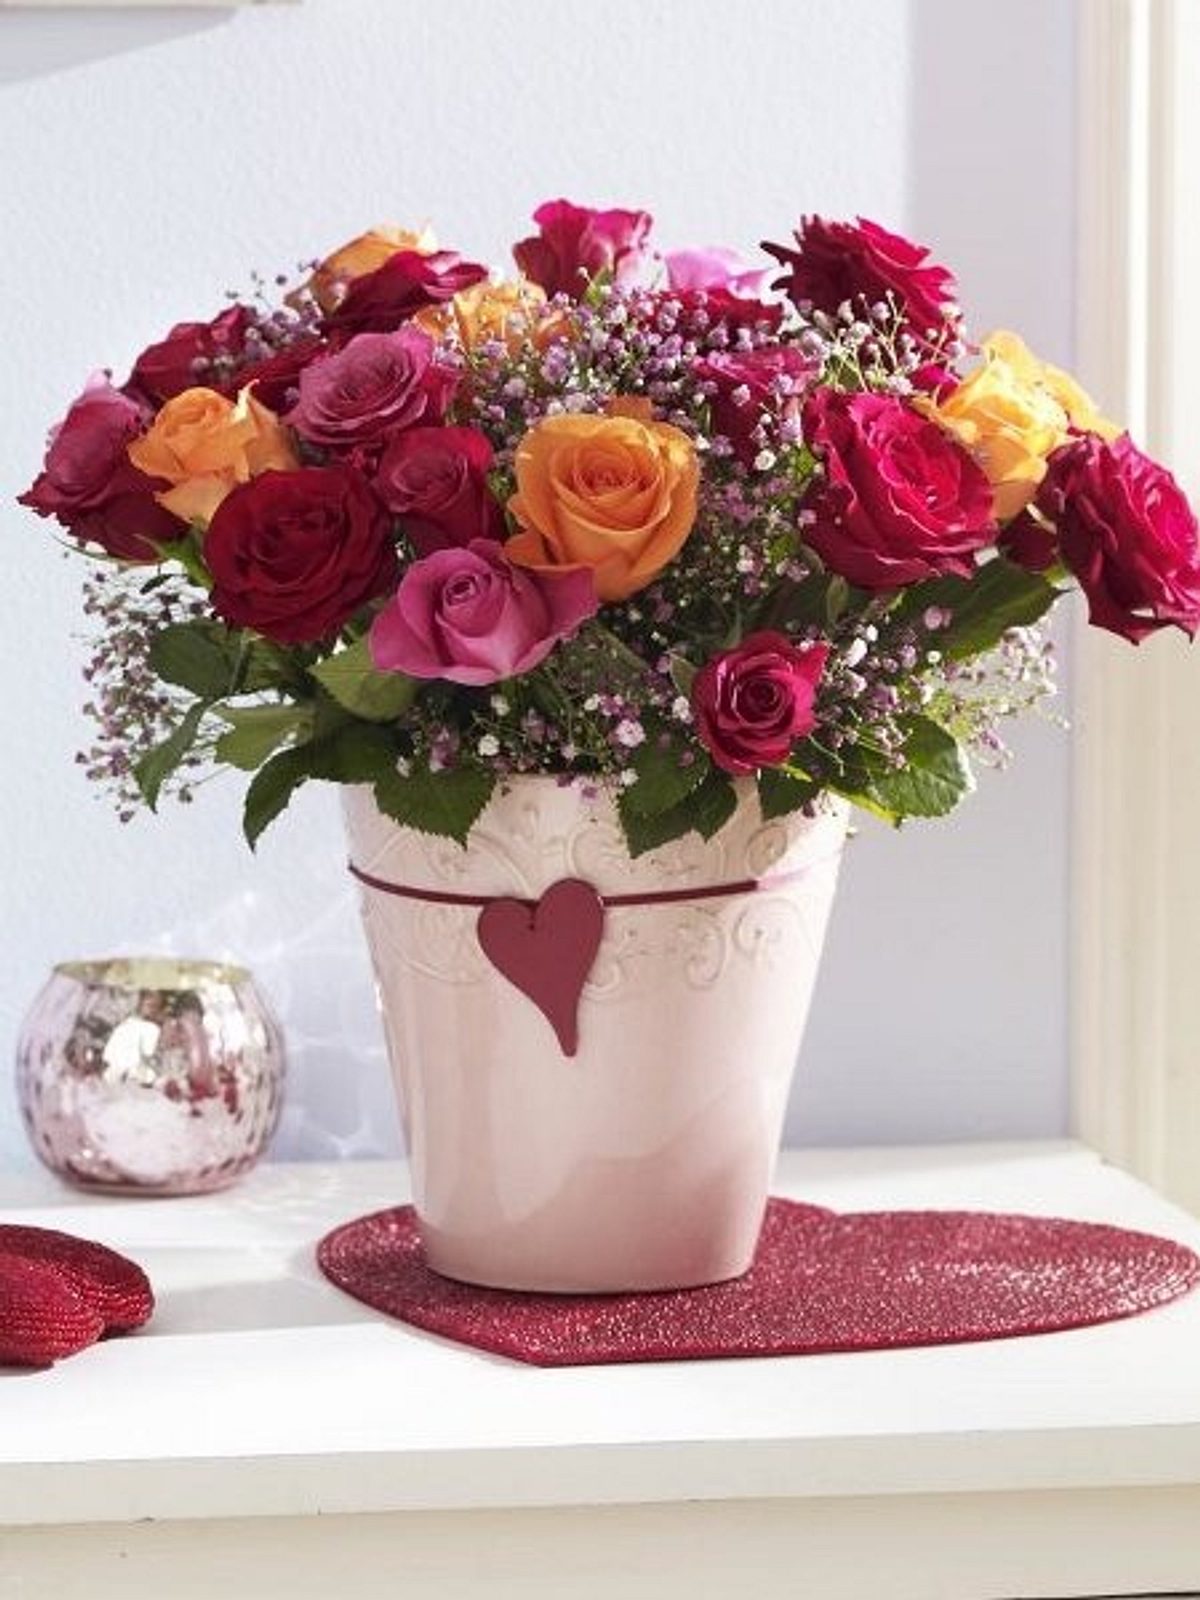  Bixufcai Geschenke für Frauen Gestrickte Blumen Mit LED Lichter  Handgemachter Topfpflanze Exquisite Gestrickte Blumen für Romantisch  Dekoration Geschenk zum Muttertag Valentinstag Jubiläum